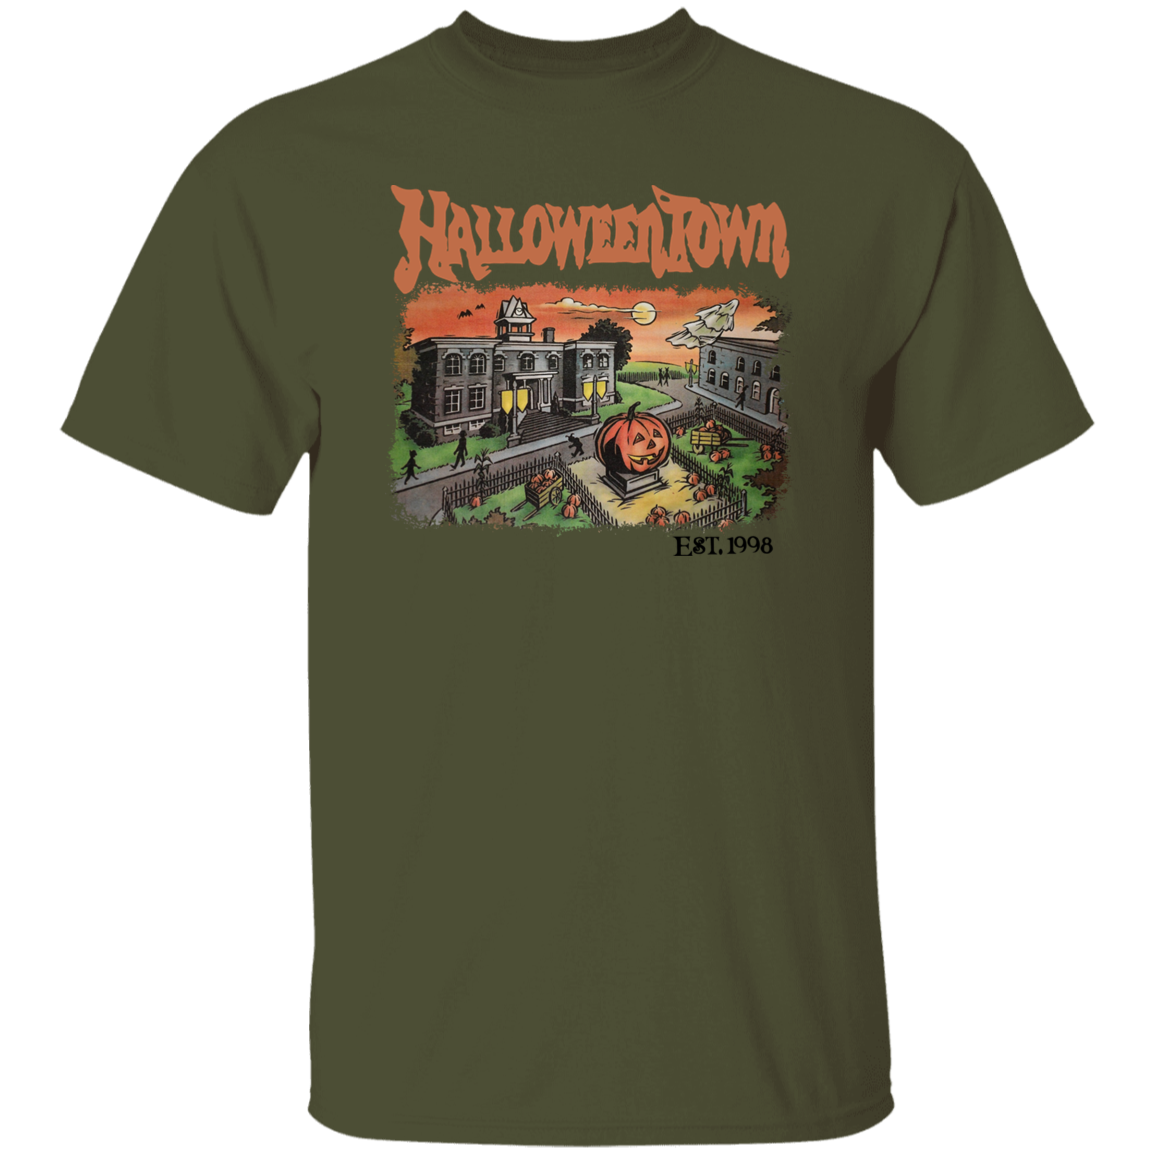 HalloweenTown- Men's T-Shirt